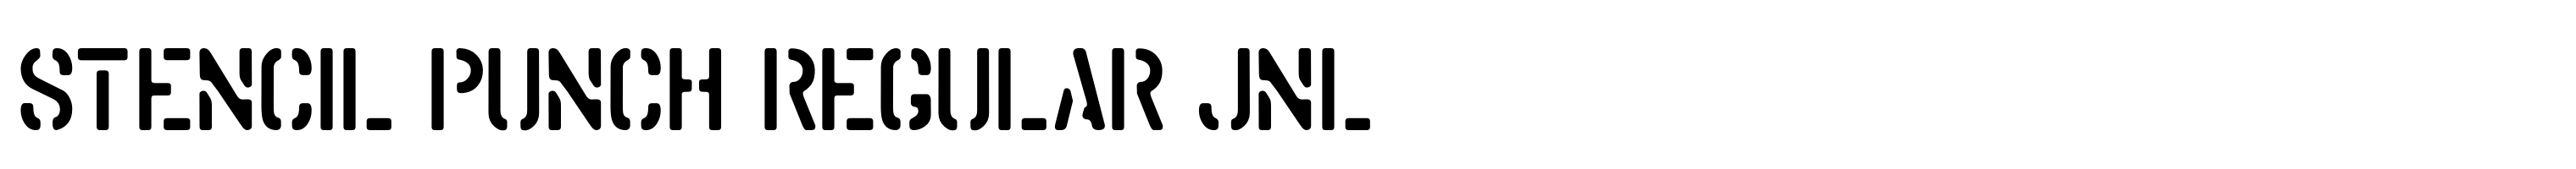 Stencil Punch Regular JNL